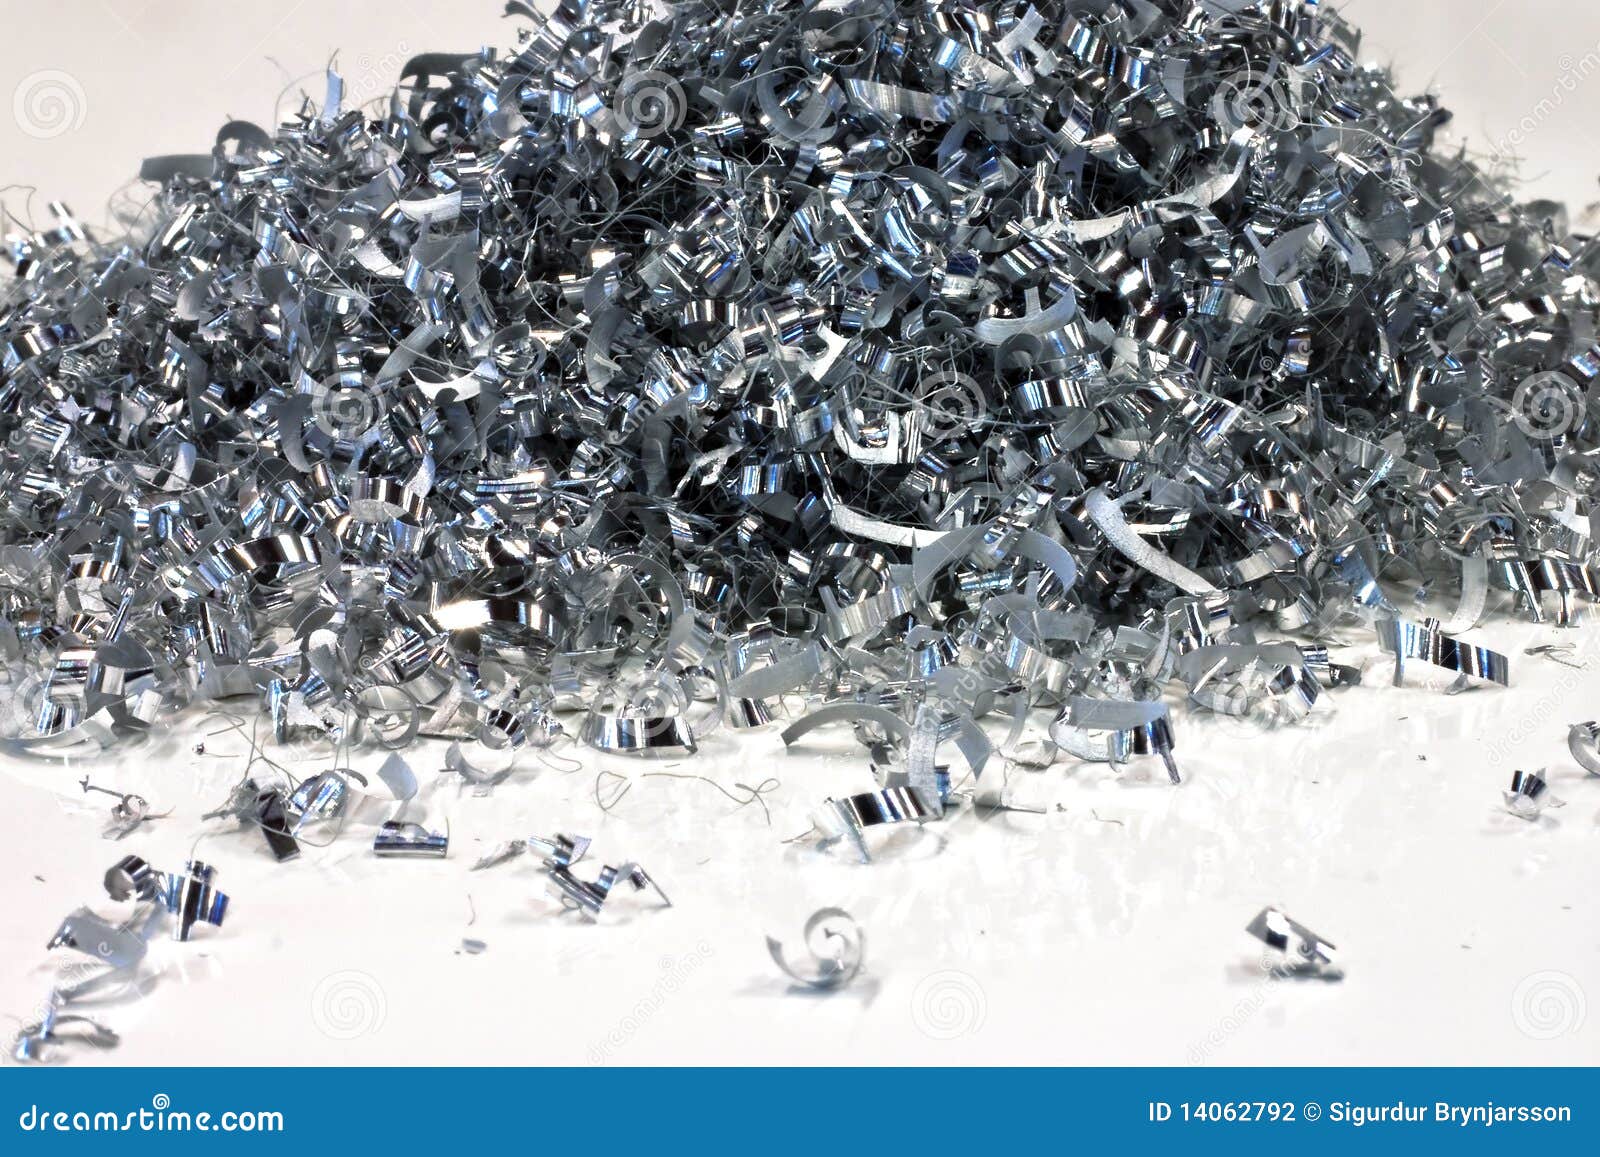 pile-aluminium-shavings-14062792.jpg